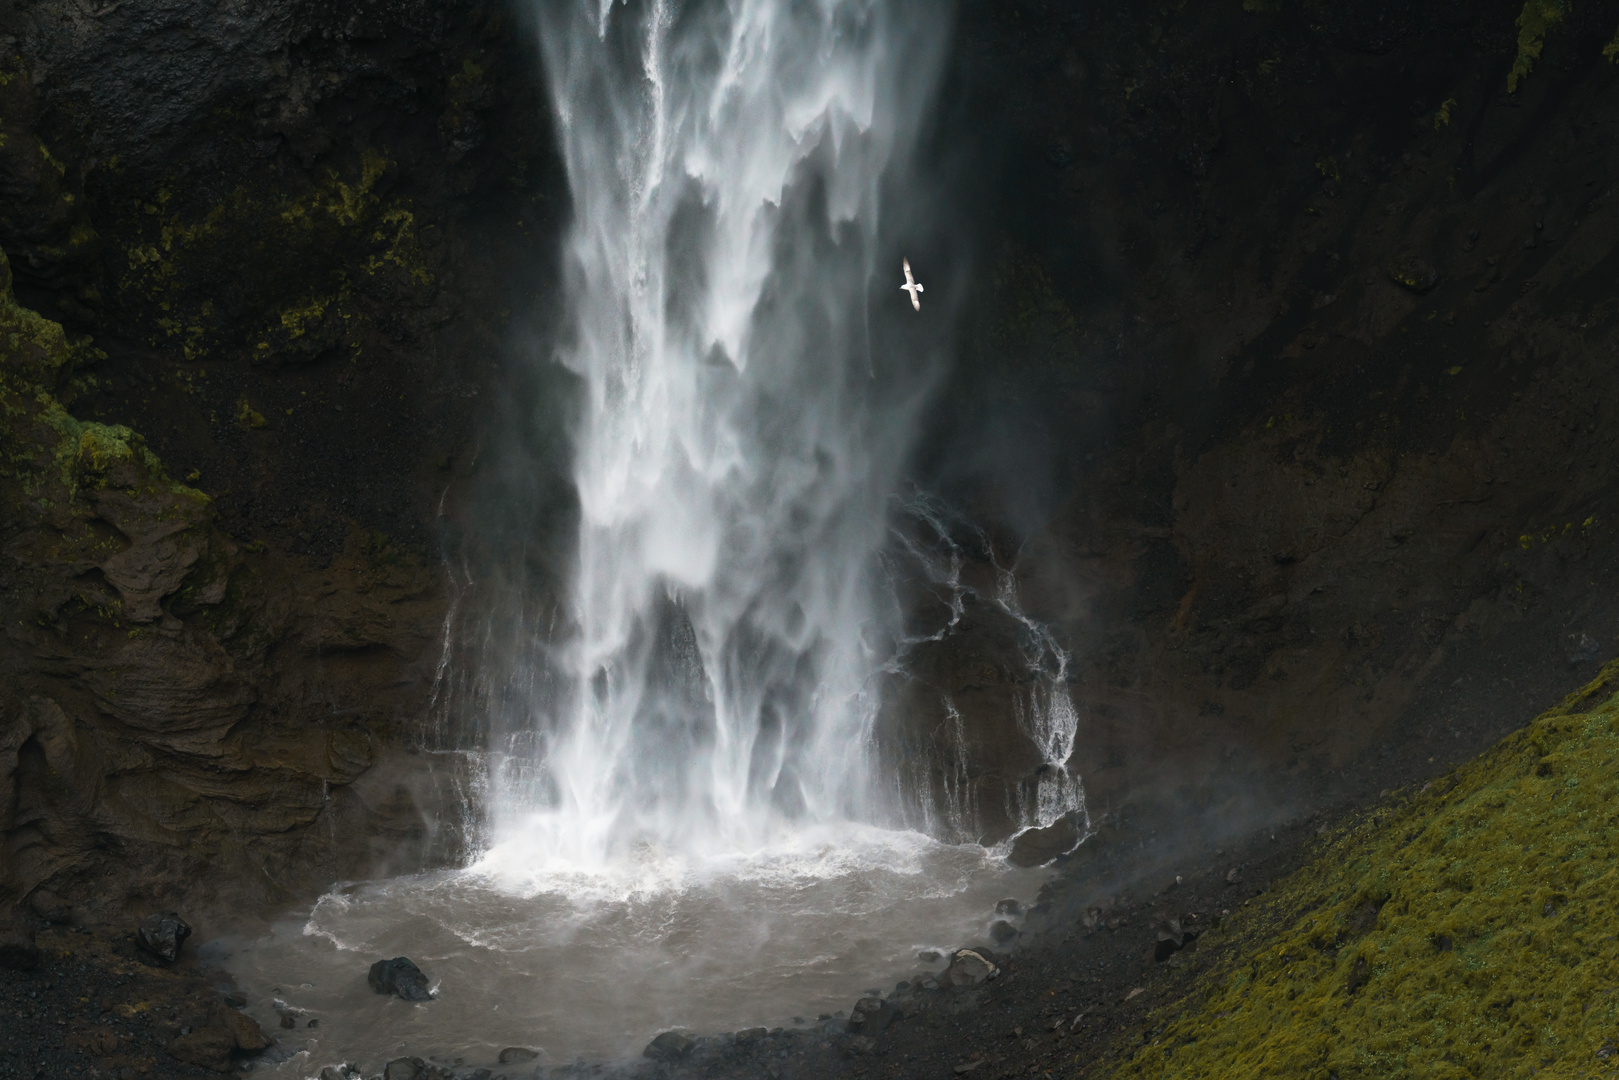 Die Wasserfälle von Mulagljufur in Island...ein wunderschöner Ort.